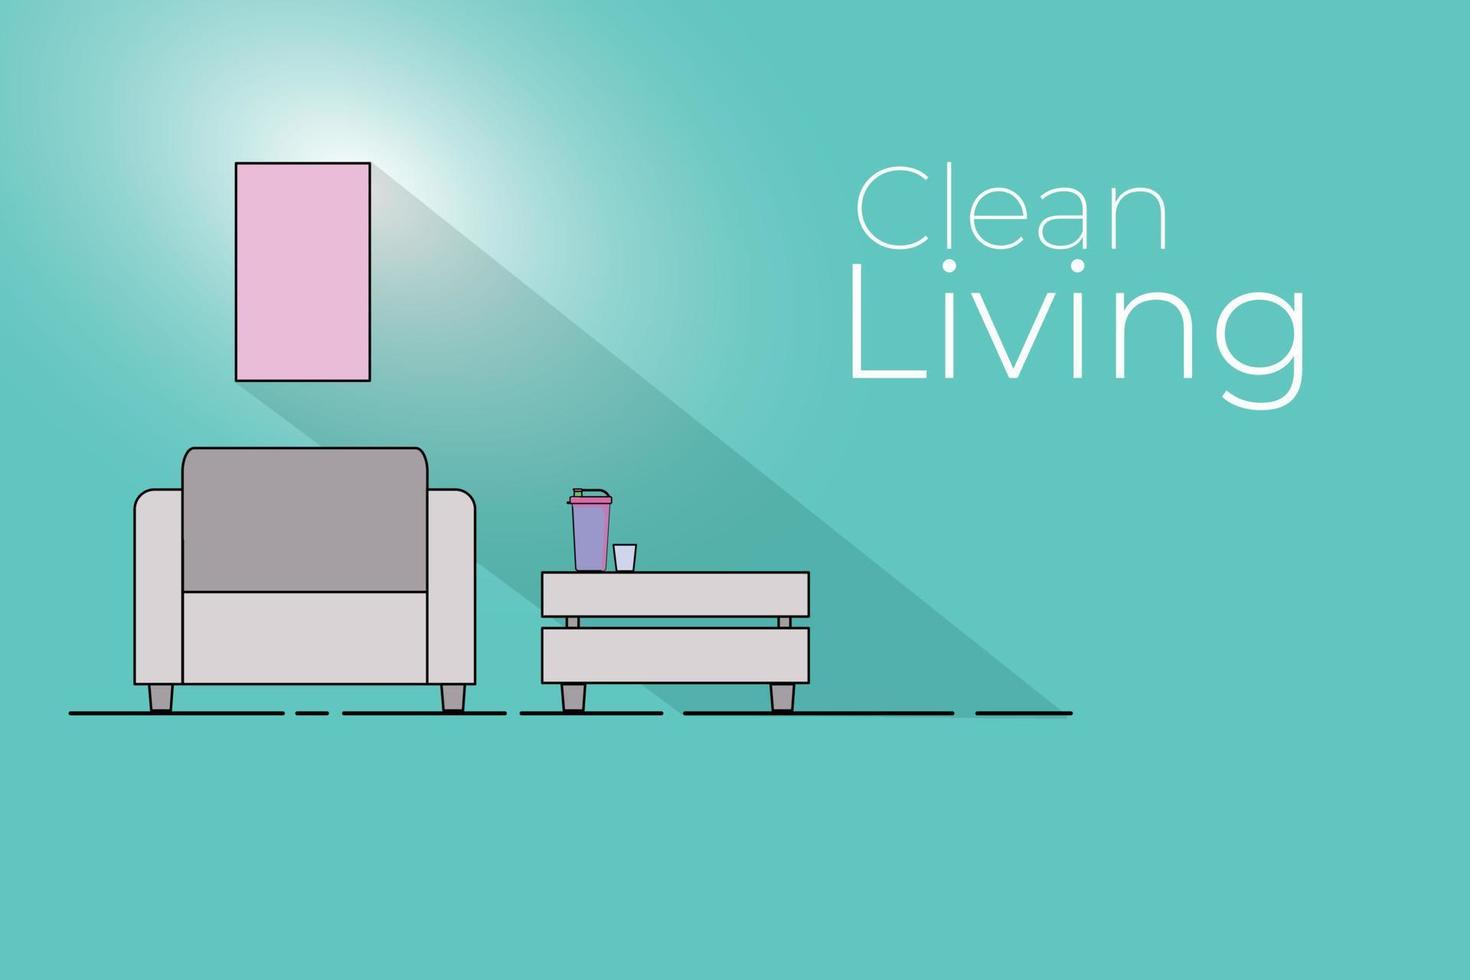 schone woonkamer. gezonde levensstijl. minimalistische stijl voor huisdecoratie vector